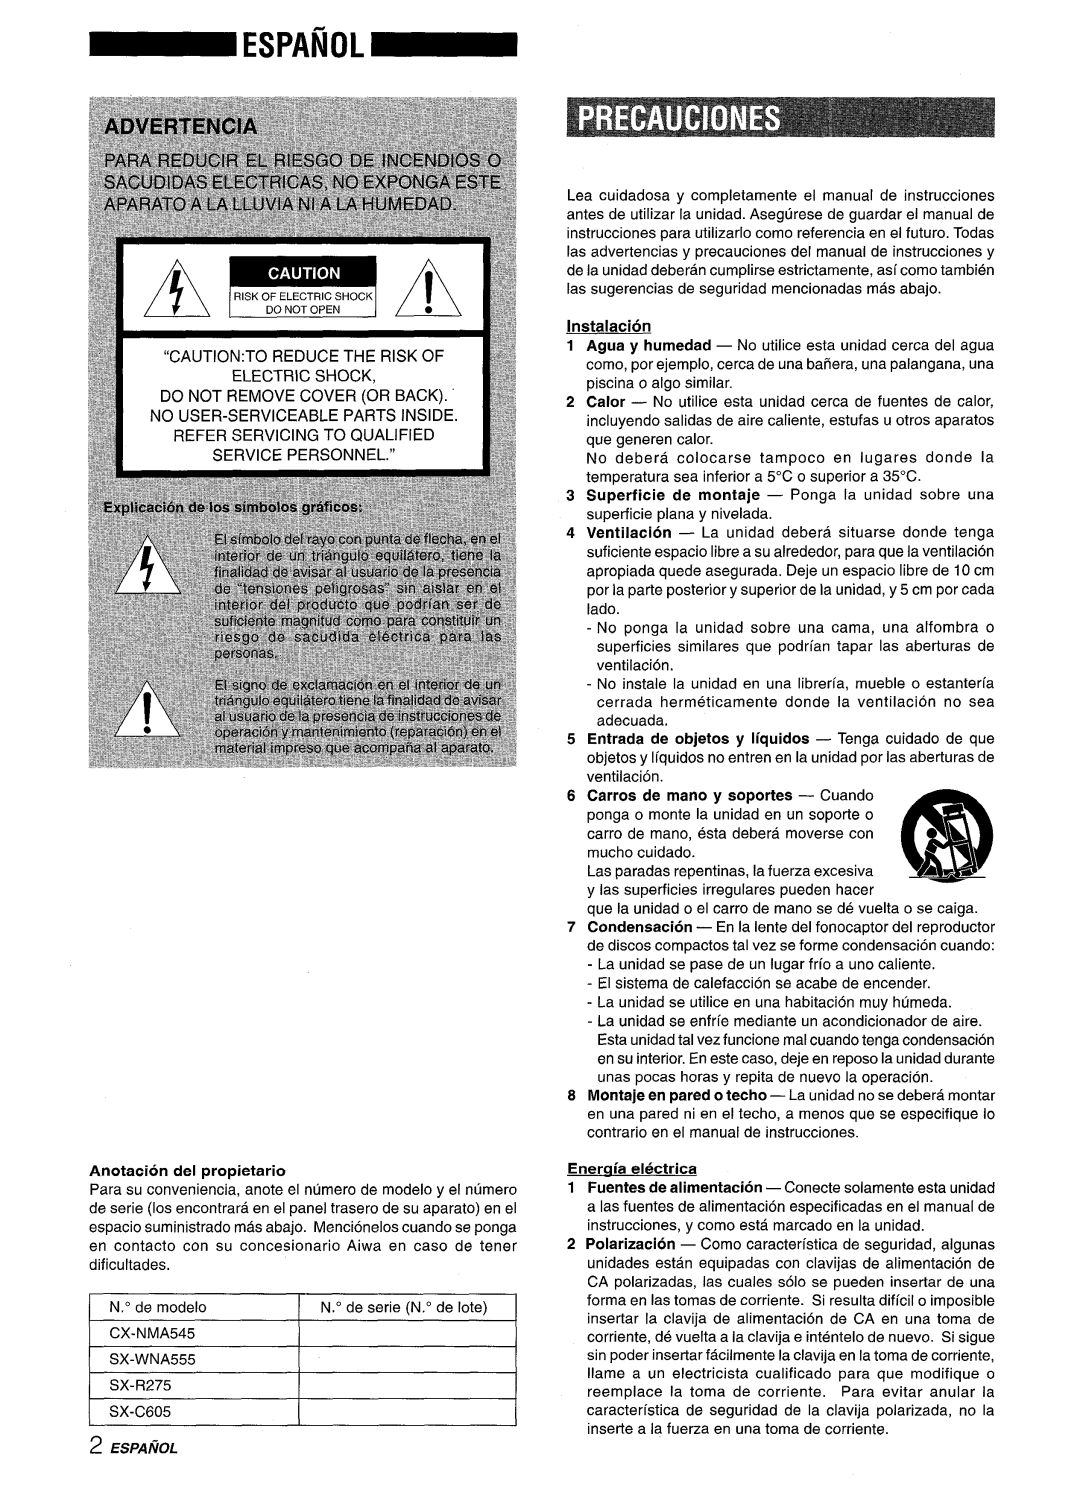 Aiwa SX-C605, SX-WNA555 manual Anotacion del propietario, Instalacion, Enermia electrica 